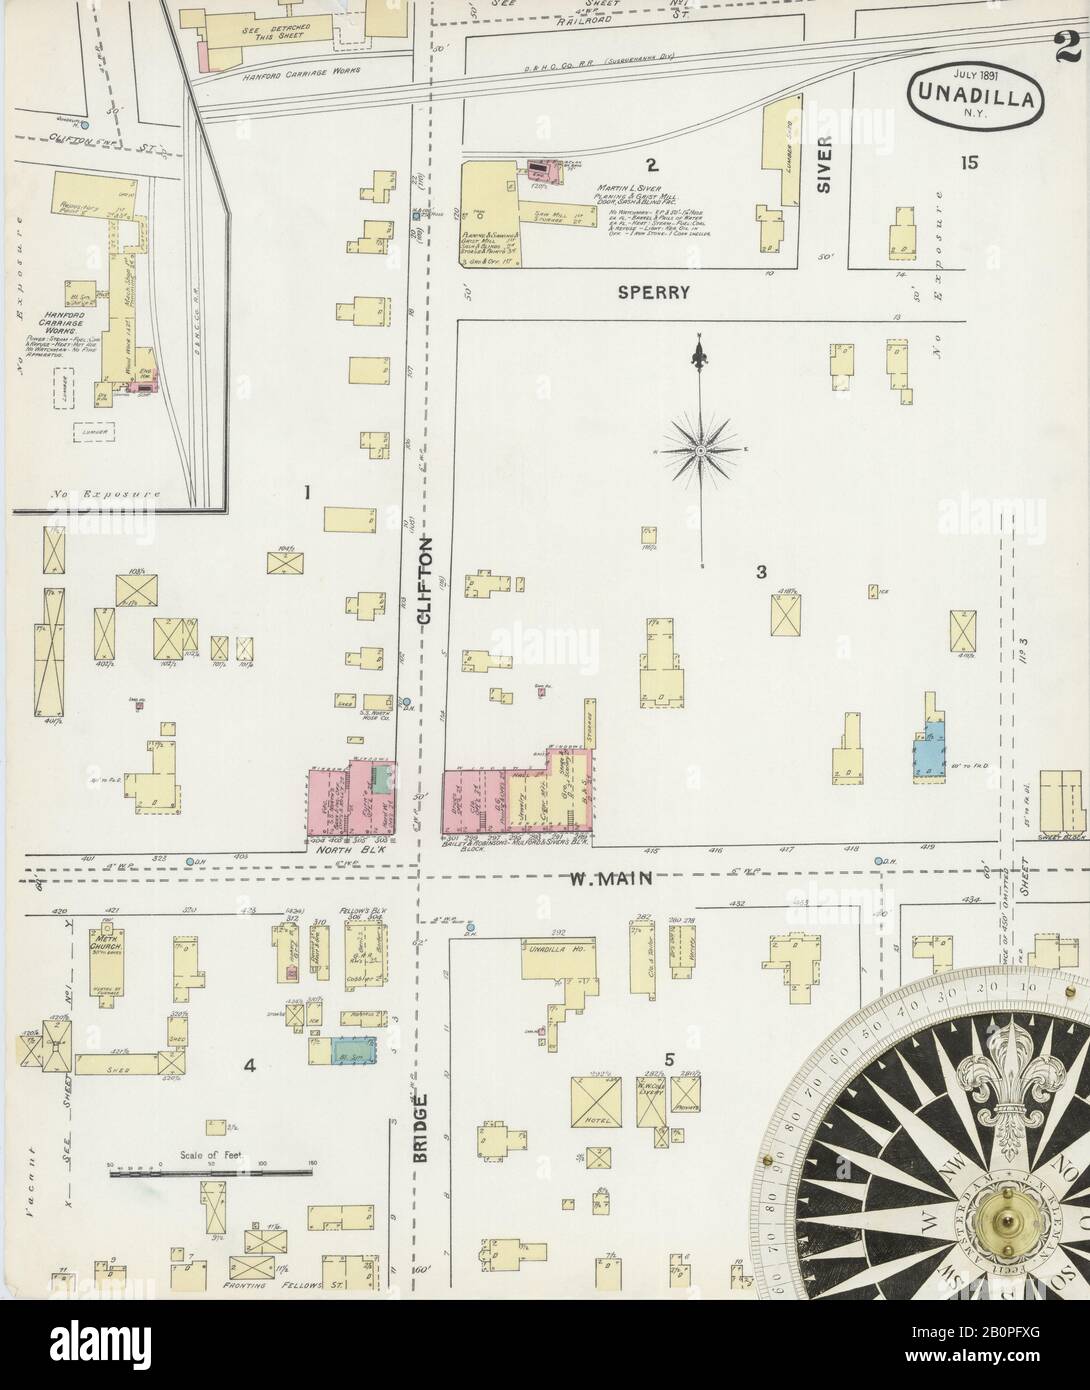 Bild 2 von Sanborn Fire Insurance Map aus Unadilla, Otsego County, New York. Jul. 3 Blatt(e), Amerika, Straßenkarte mit einem Kompass Aus Dem 19. Jahrhundert Stockfoto